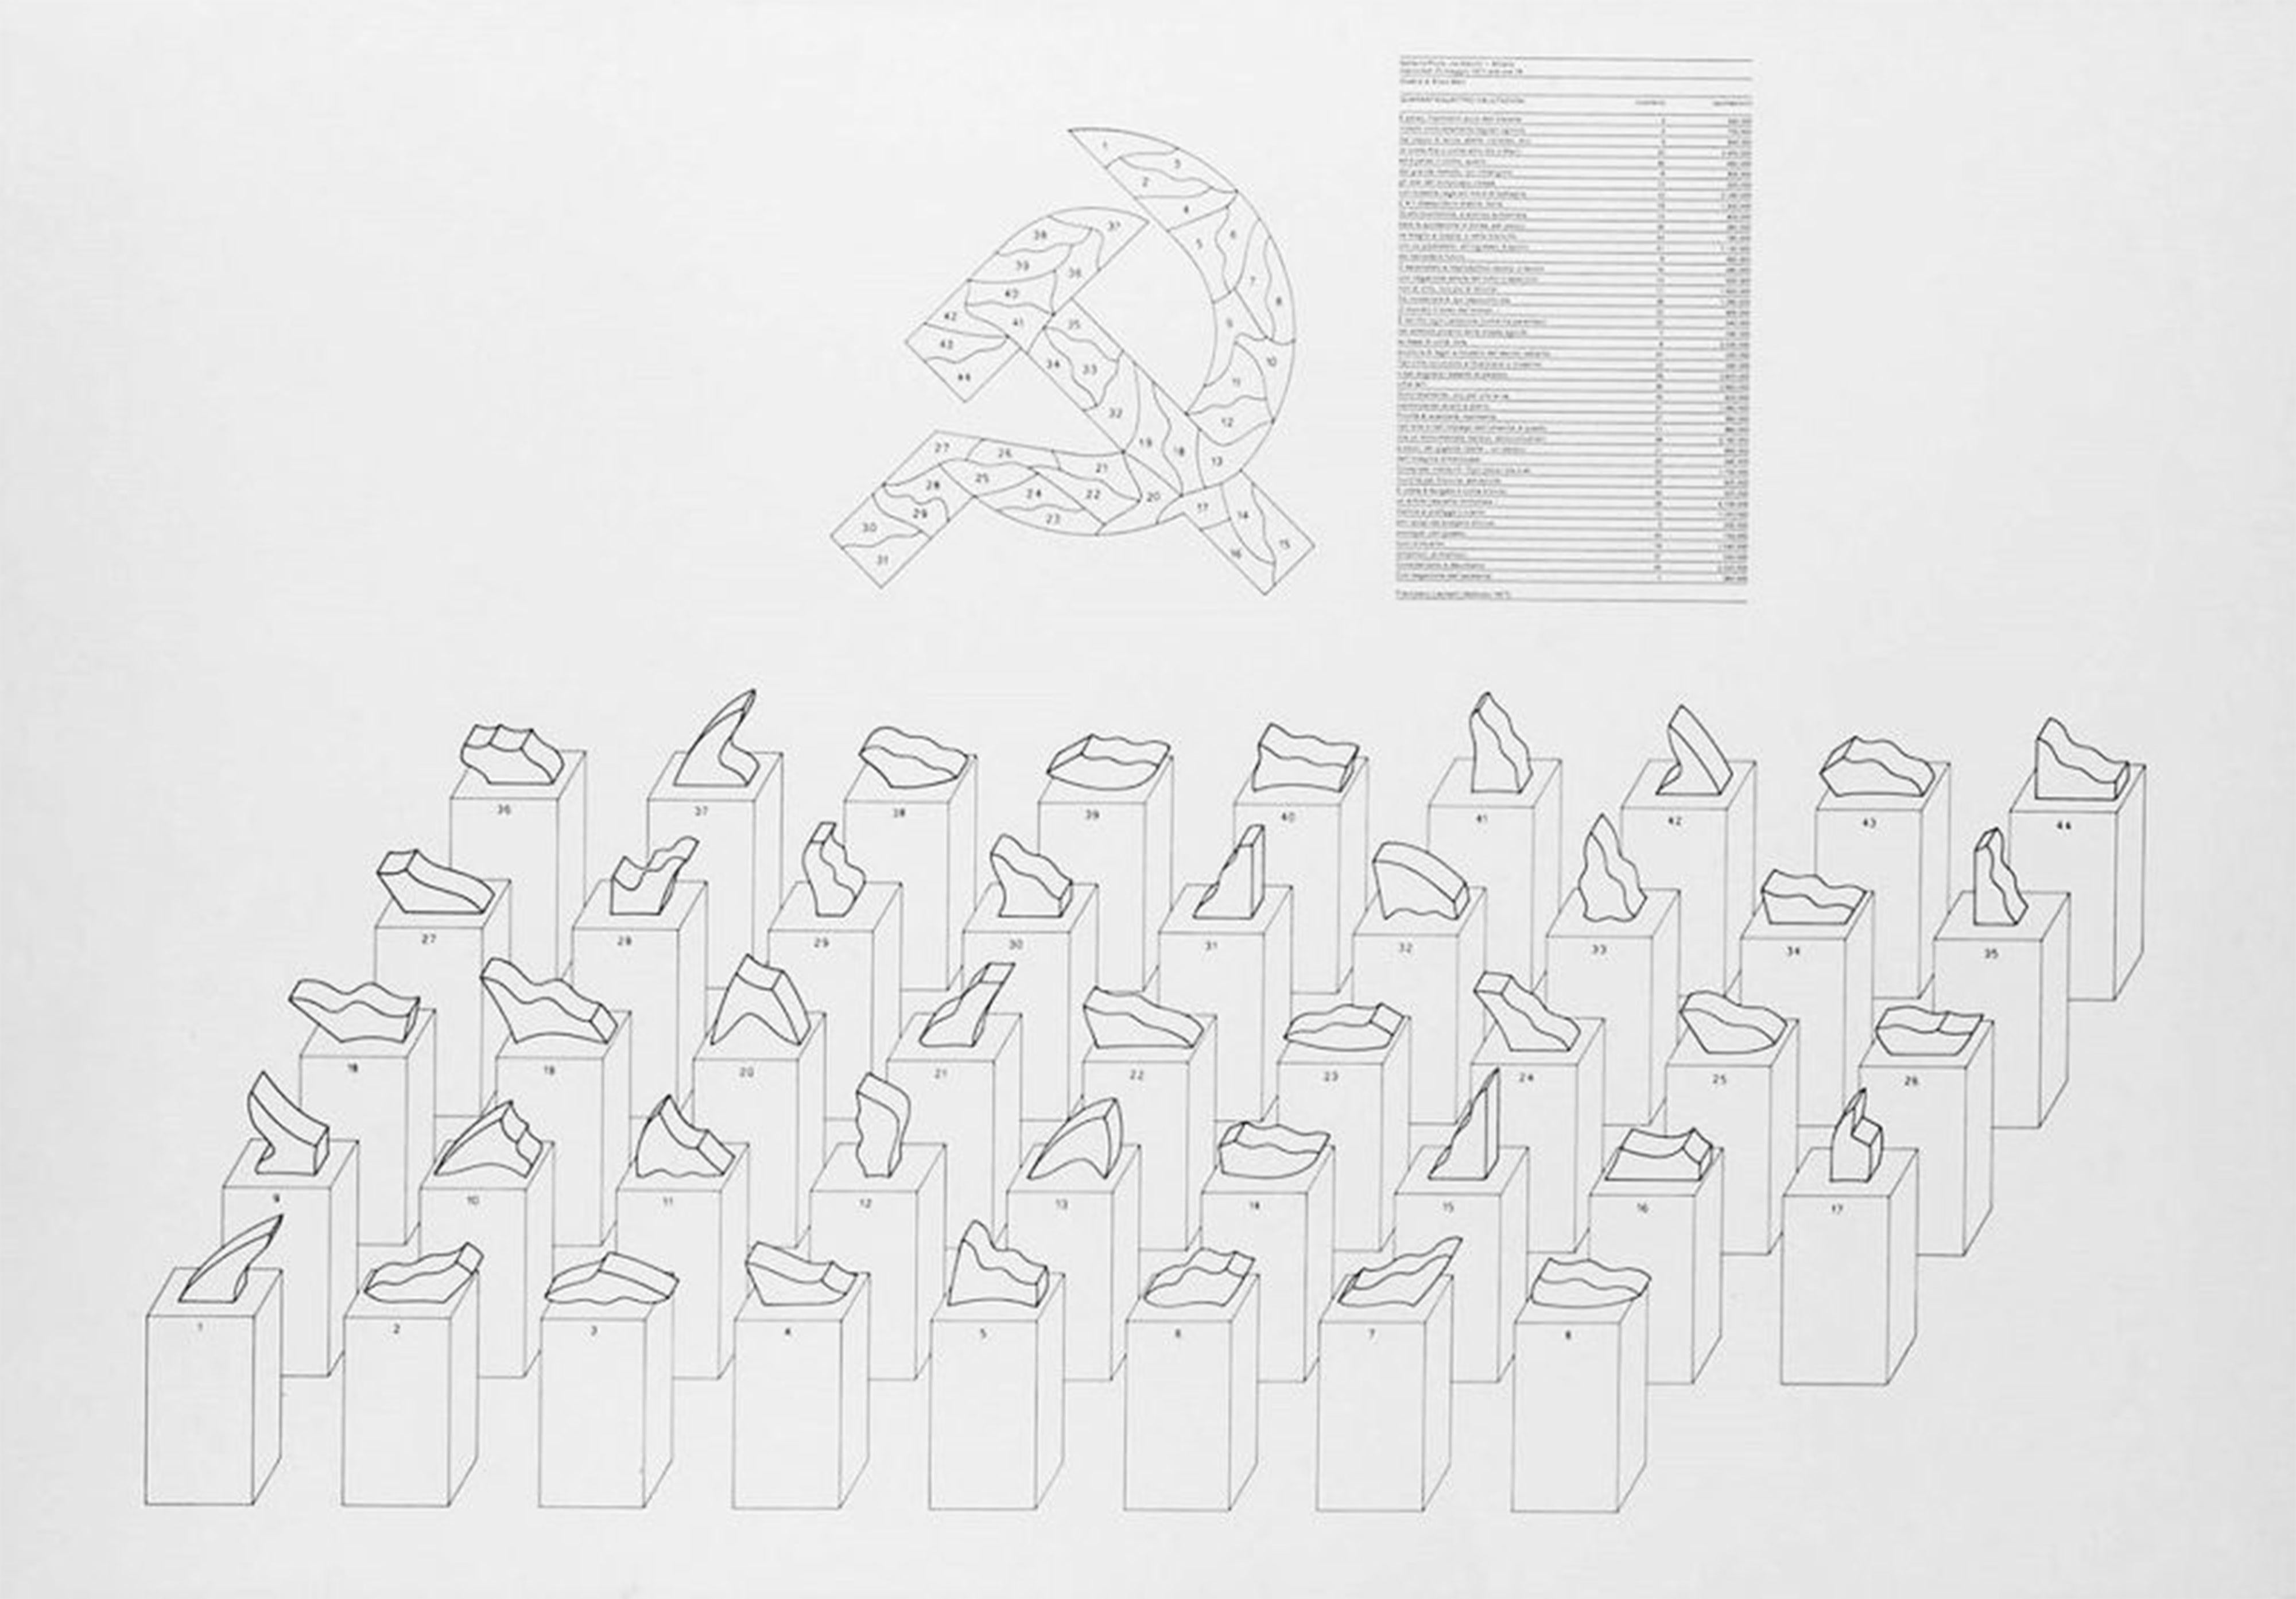 44 valutazioni, 1977, Litografia, Design, Politica - Print by Enzo Mari